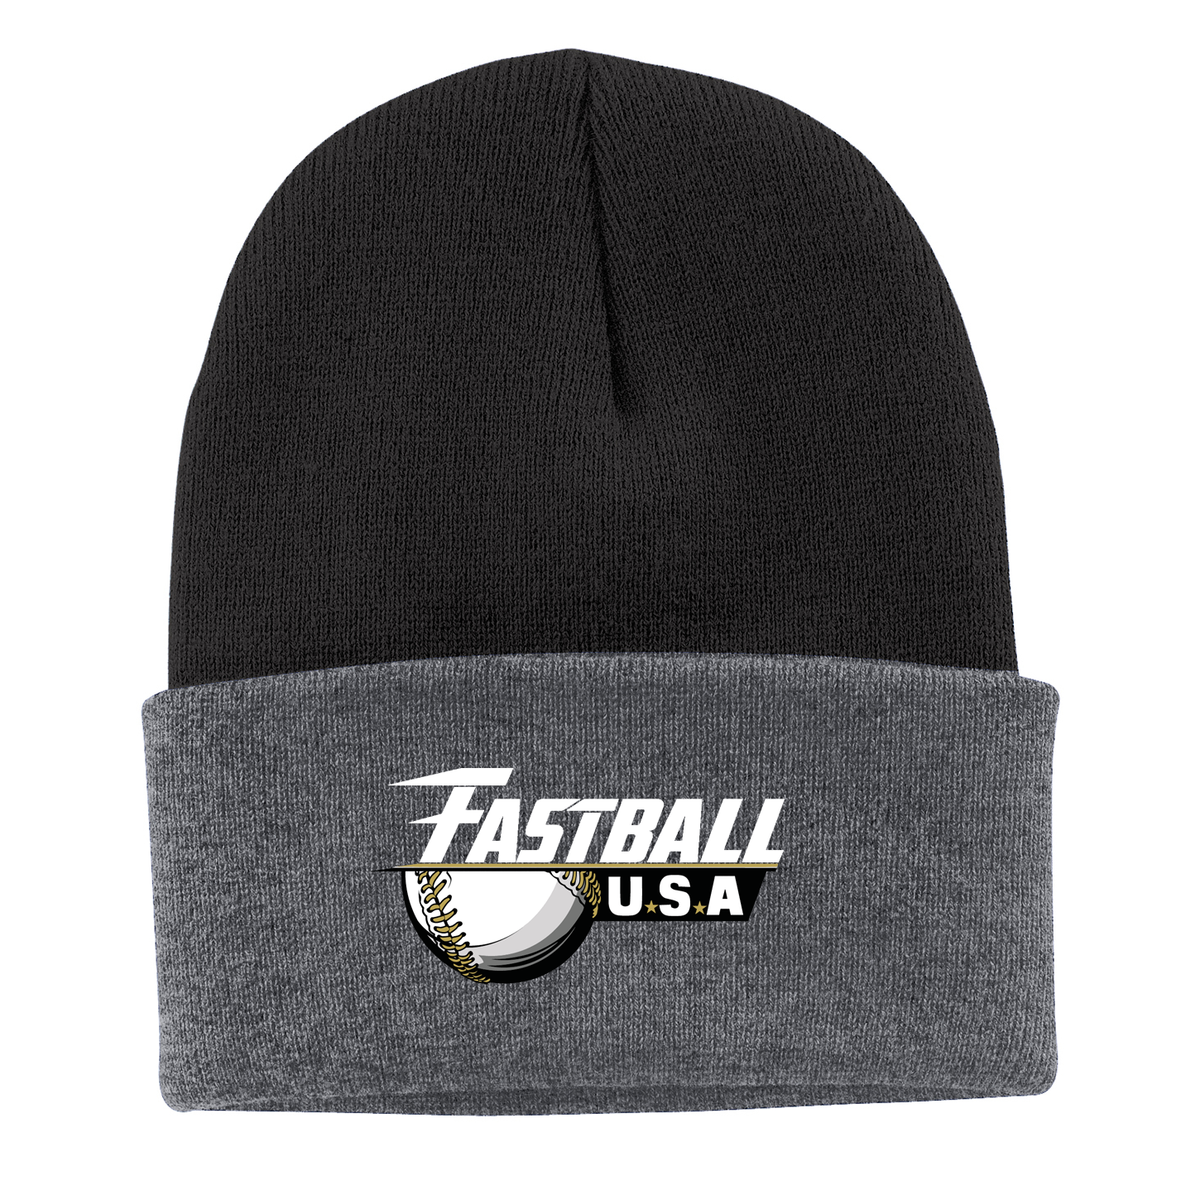 Team Fastball Baseball Knit Beanie